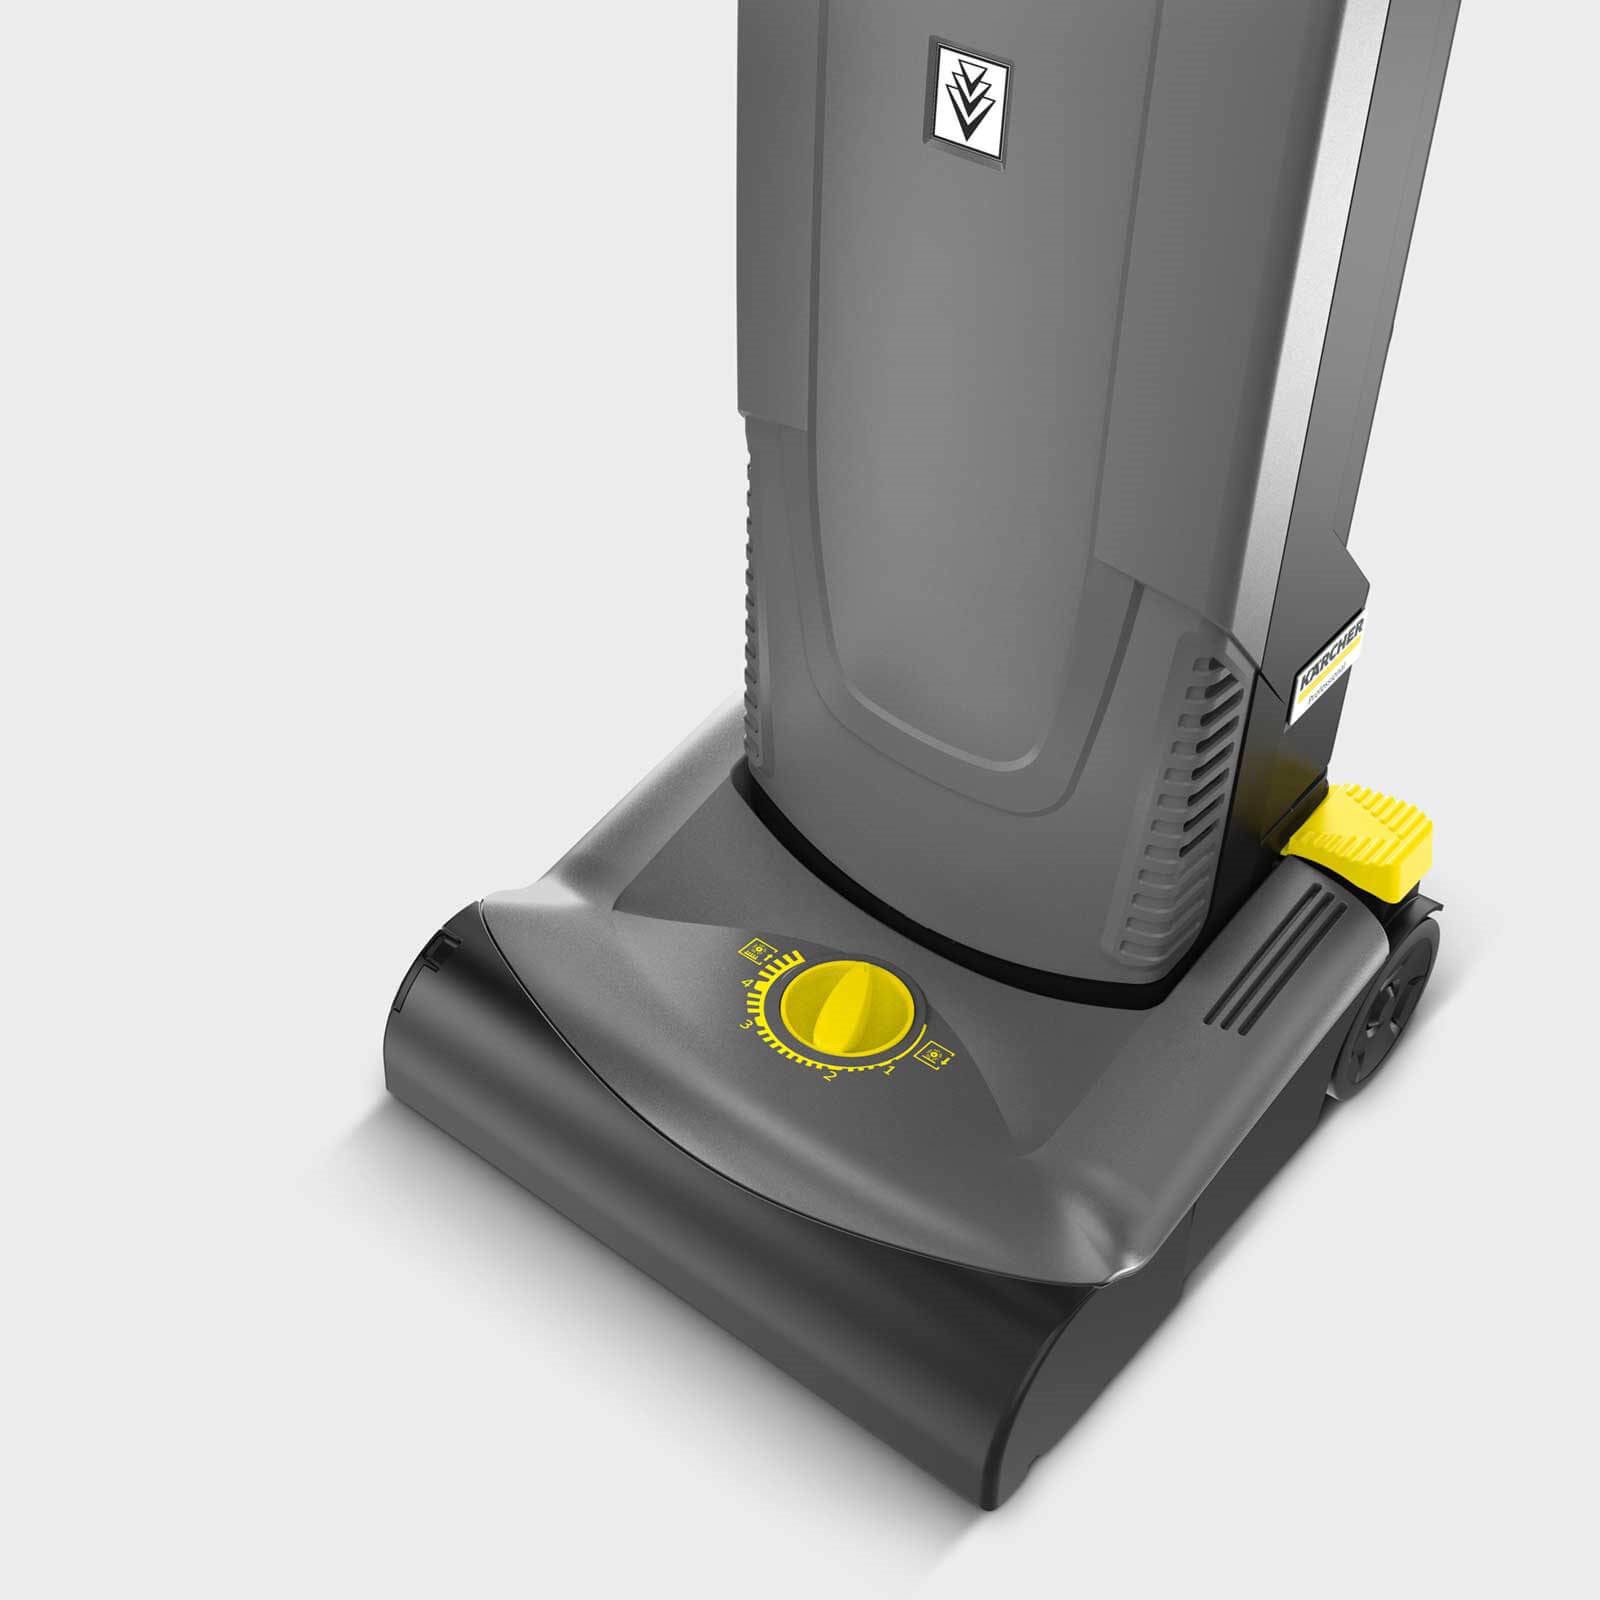 Karcher CV 30//1 Professional Upright Vacuum Cleaner New 2020 Model 240v